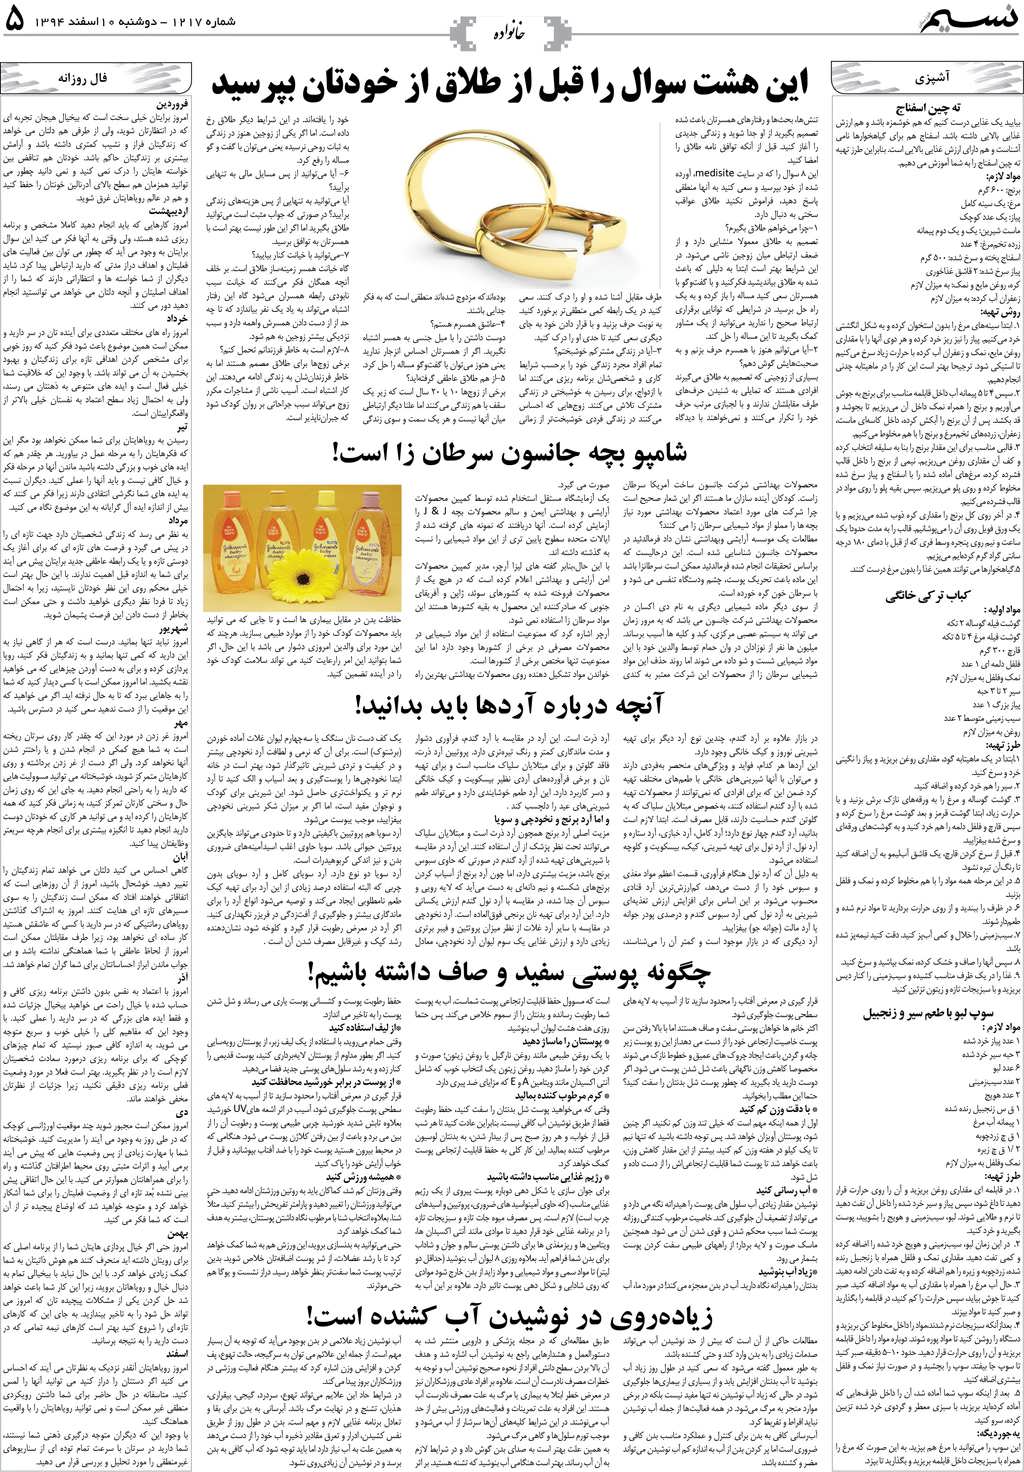 صفحه خانواده روزنامه نسیم شماره 1217